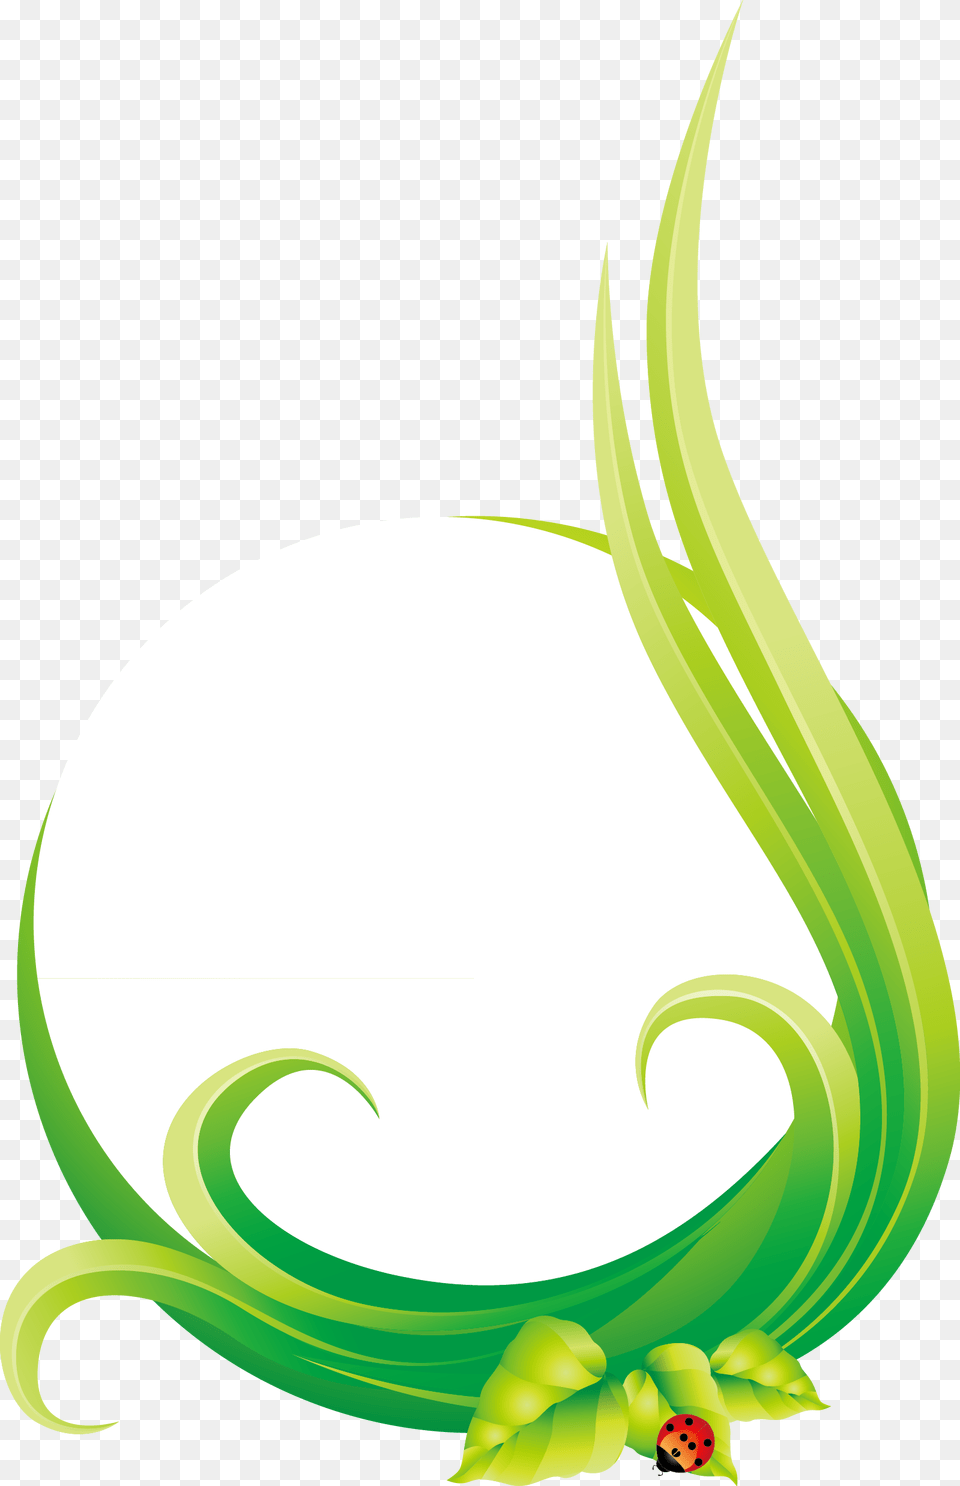 Leaf Euclidean Natural Round Illustration, Art, Floral Design, Graphics, Green Free Transparent Png